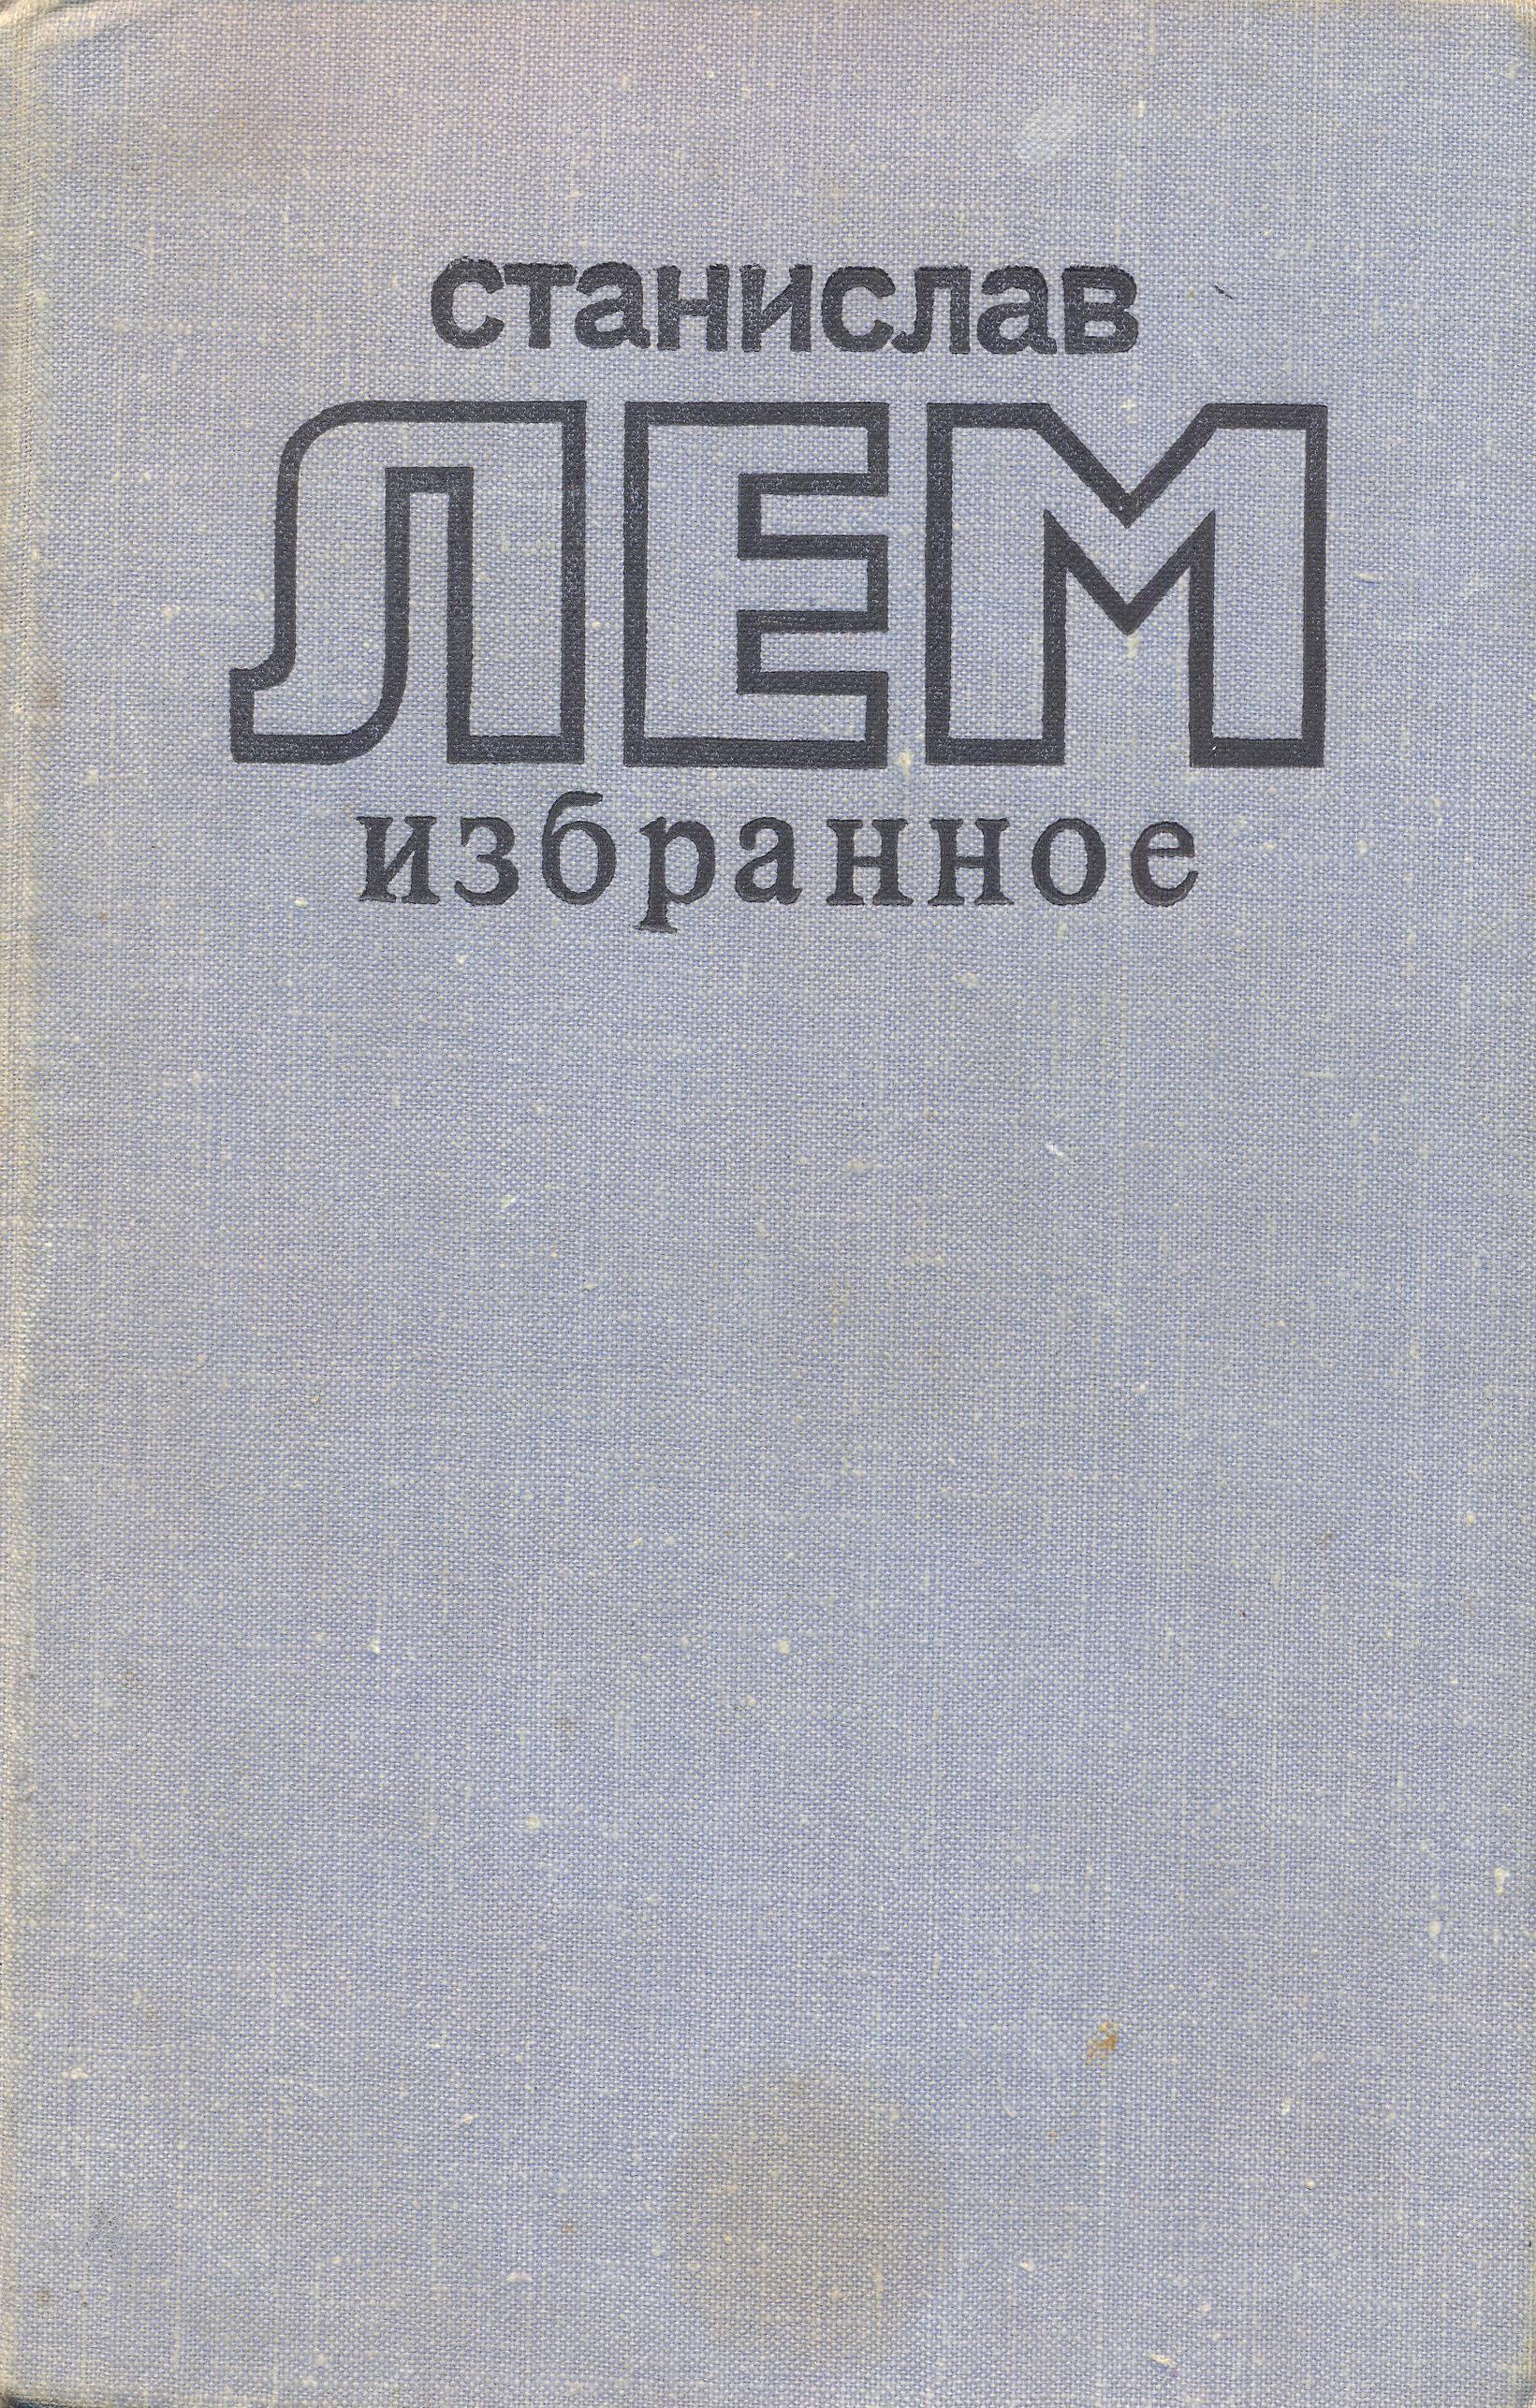 Star Diaries Russian Literatura artistike 1978.jpg